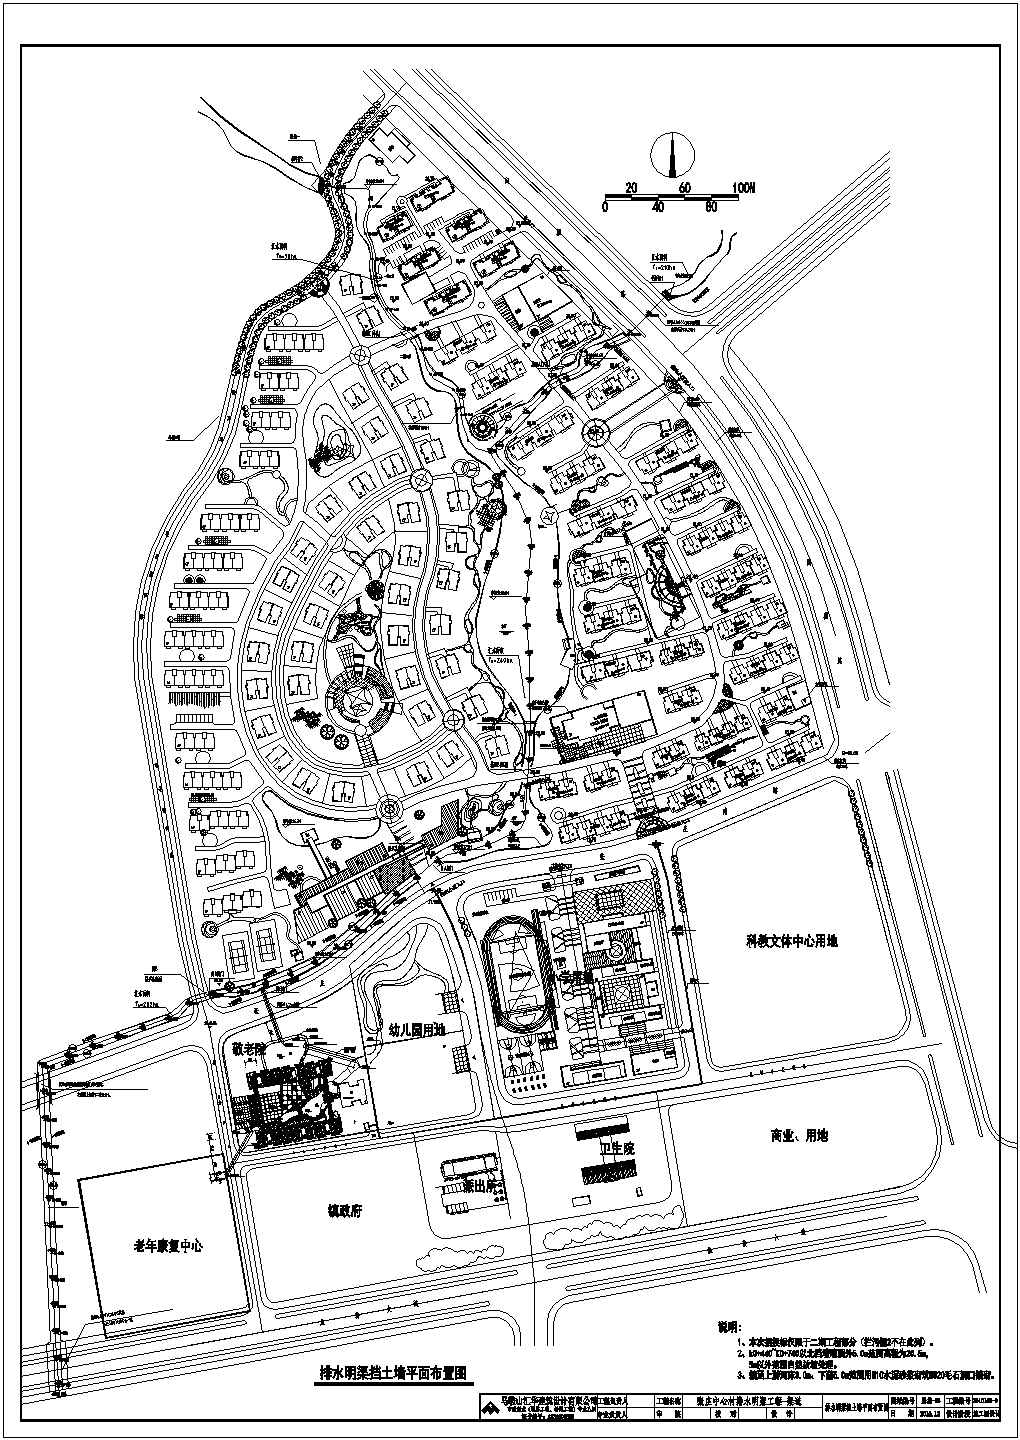 张庄中心村排水明渠工程-渠道结构设计施工图